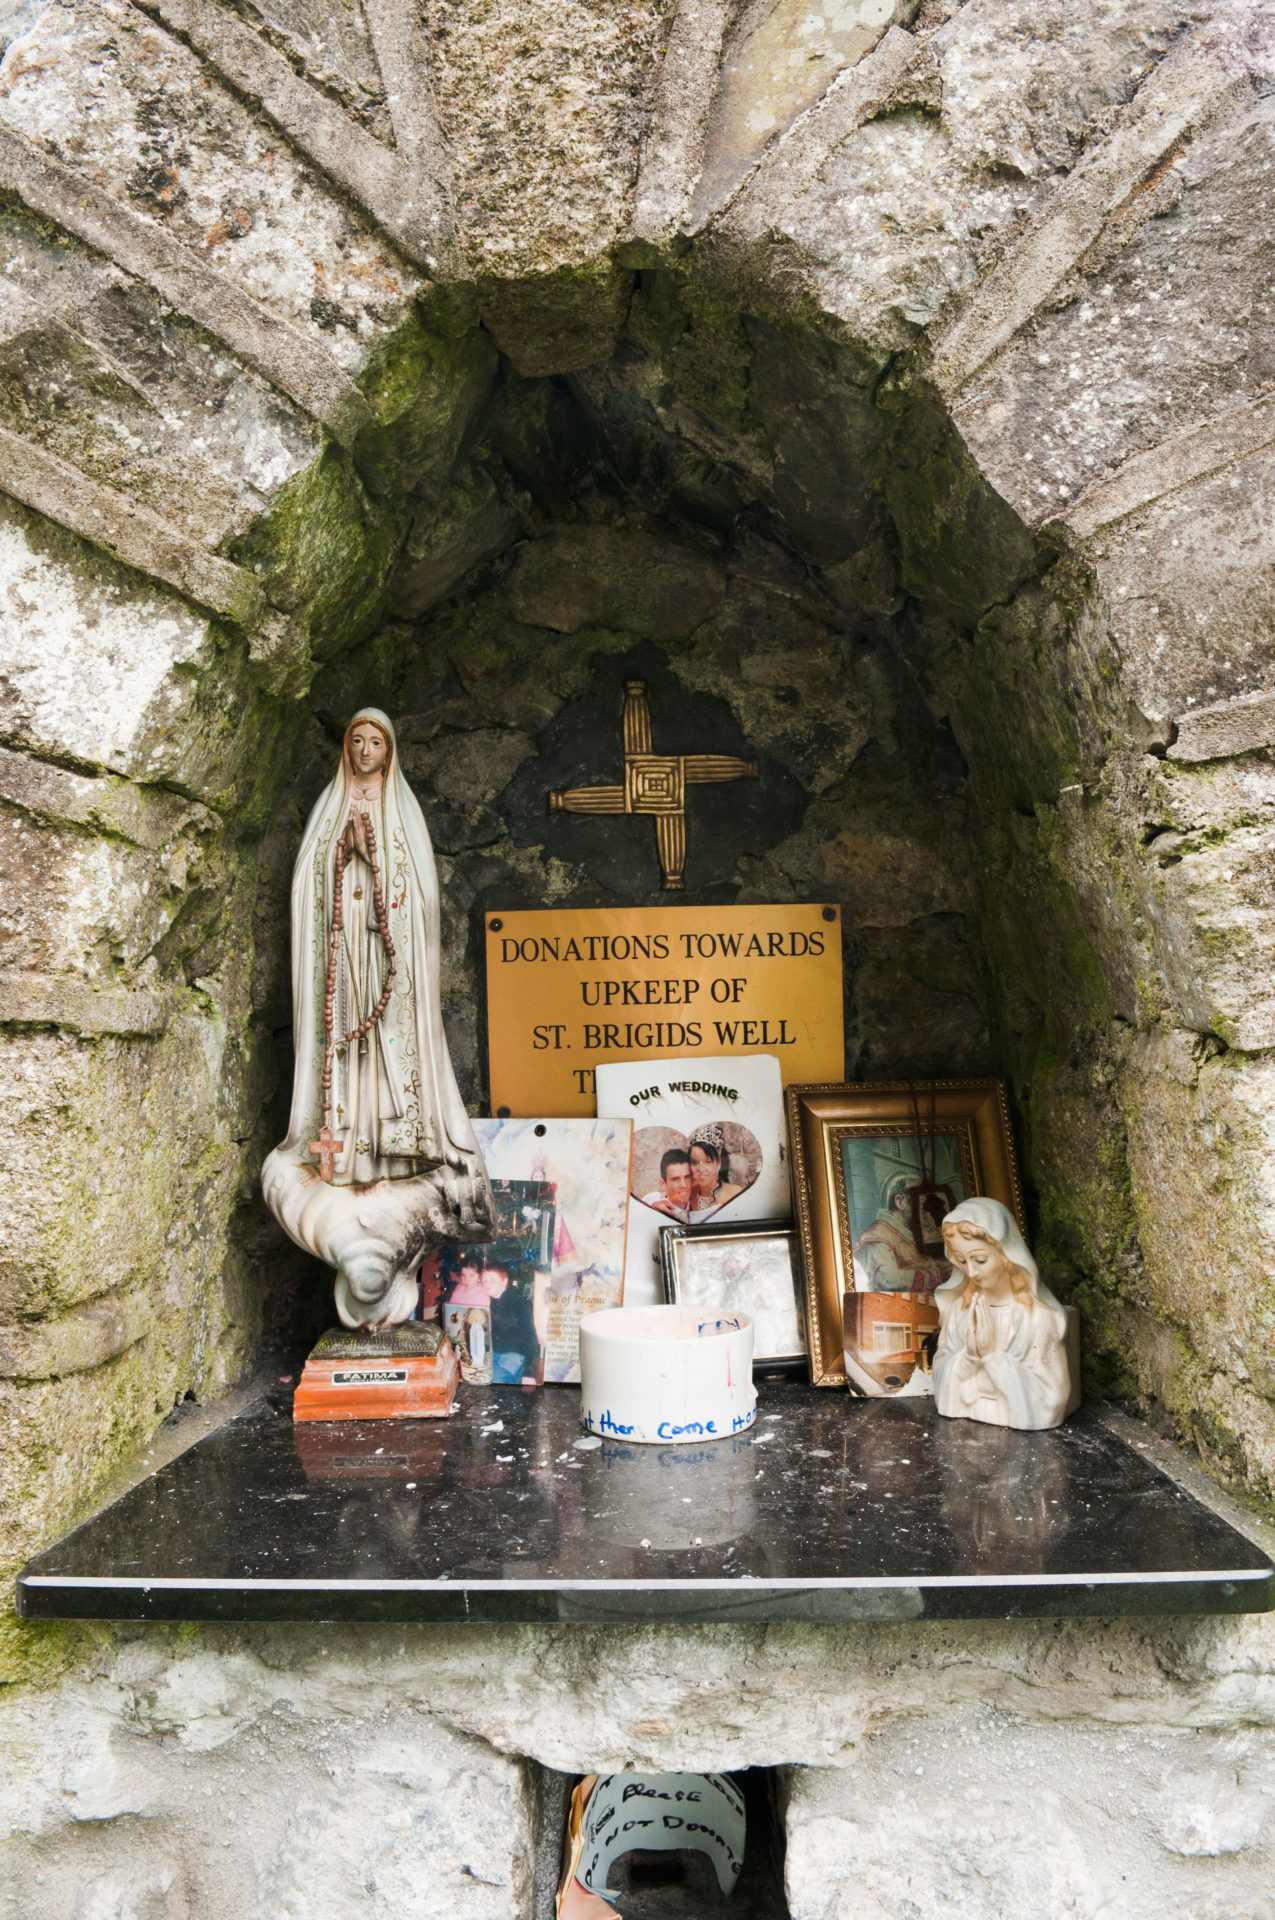 Pilgrims find hope in St Brigid this spring